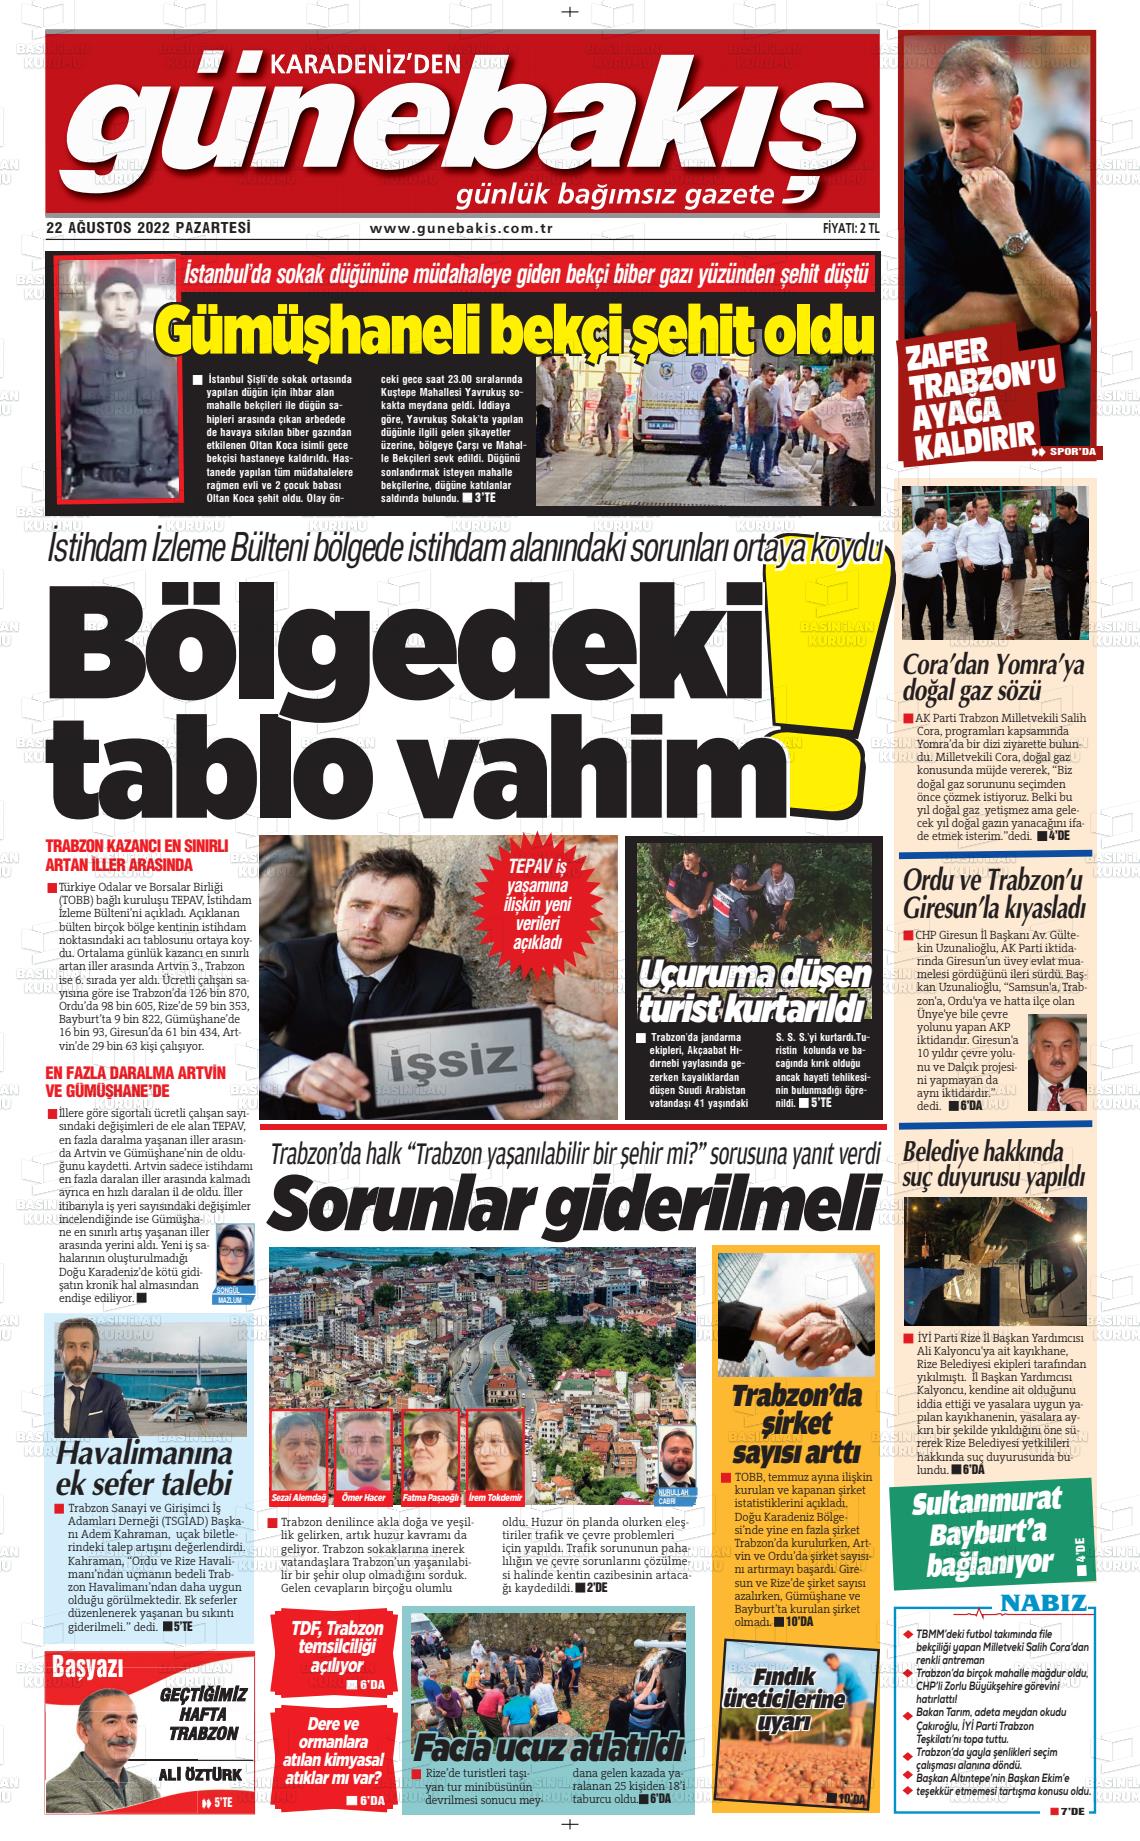 22 Ağustos 2022 Günebakış Gazete Manşeti